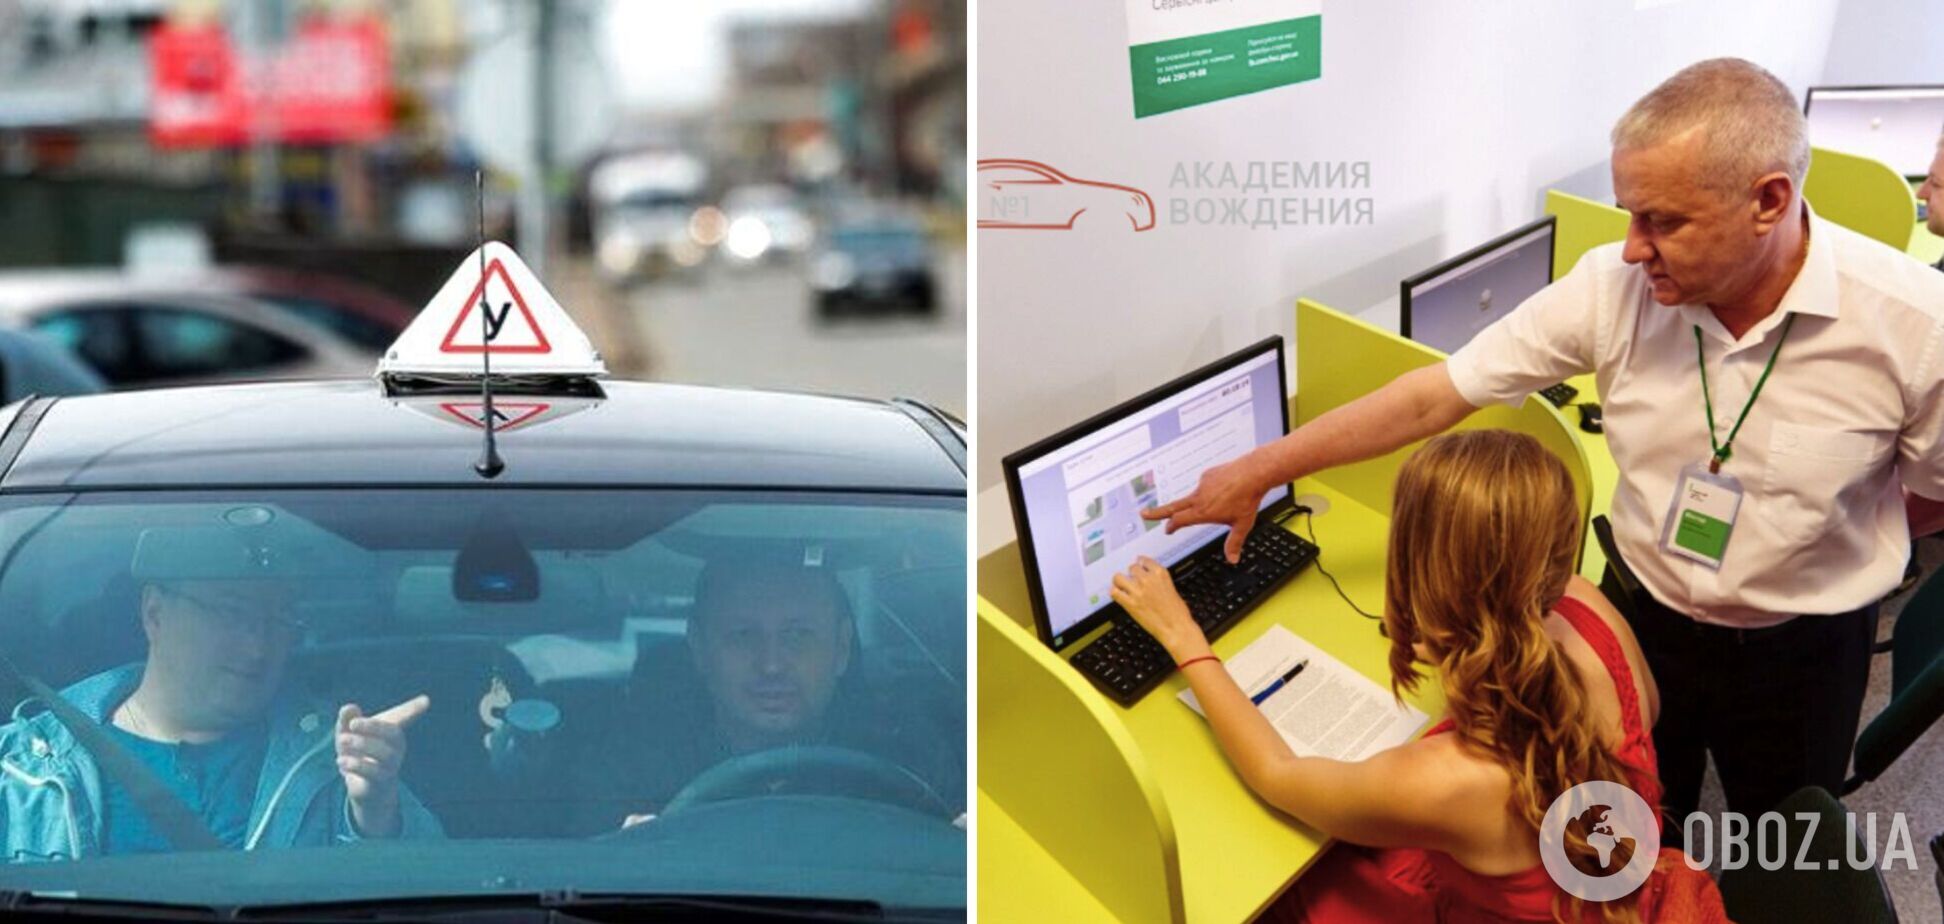 Украинцы смогут сдавать теоретический экзамен для получения водительского удостоверения без обучения в автошколе: как это будет работать